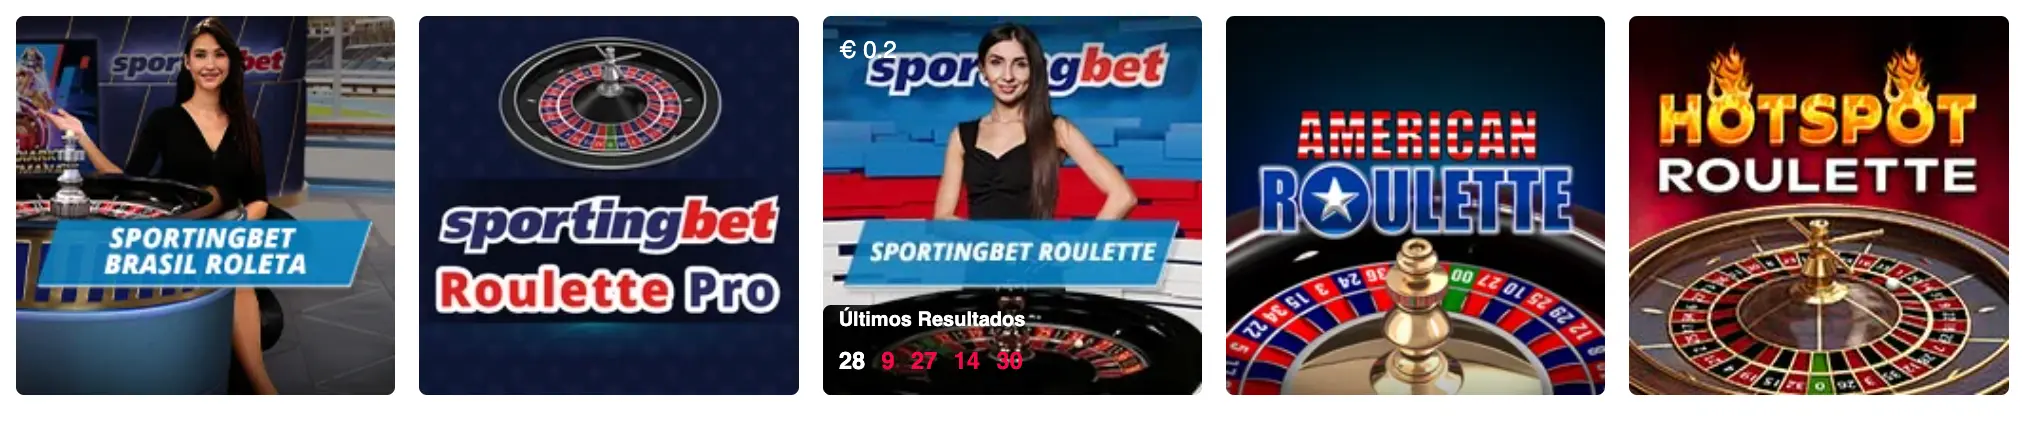 Roleta no SportingBet Casino